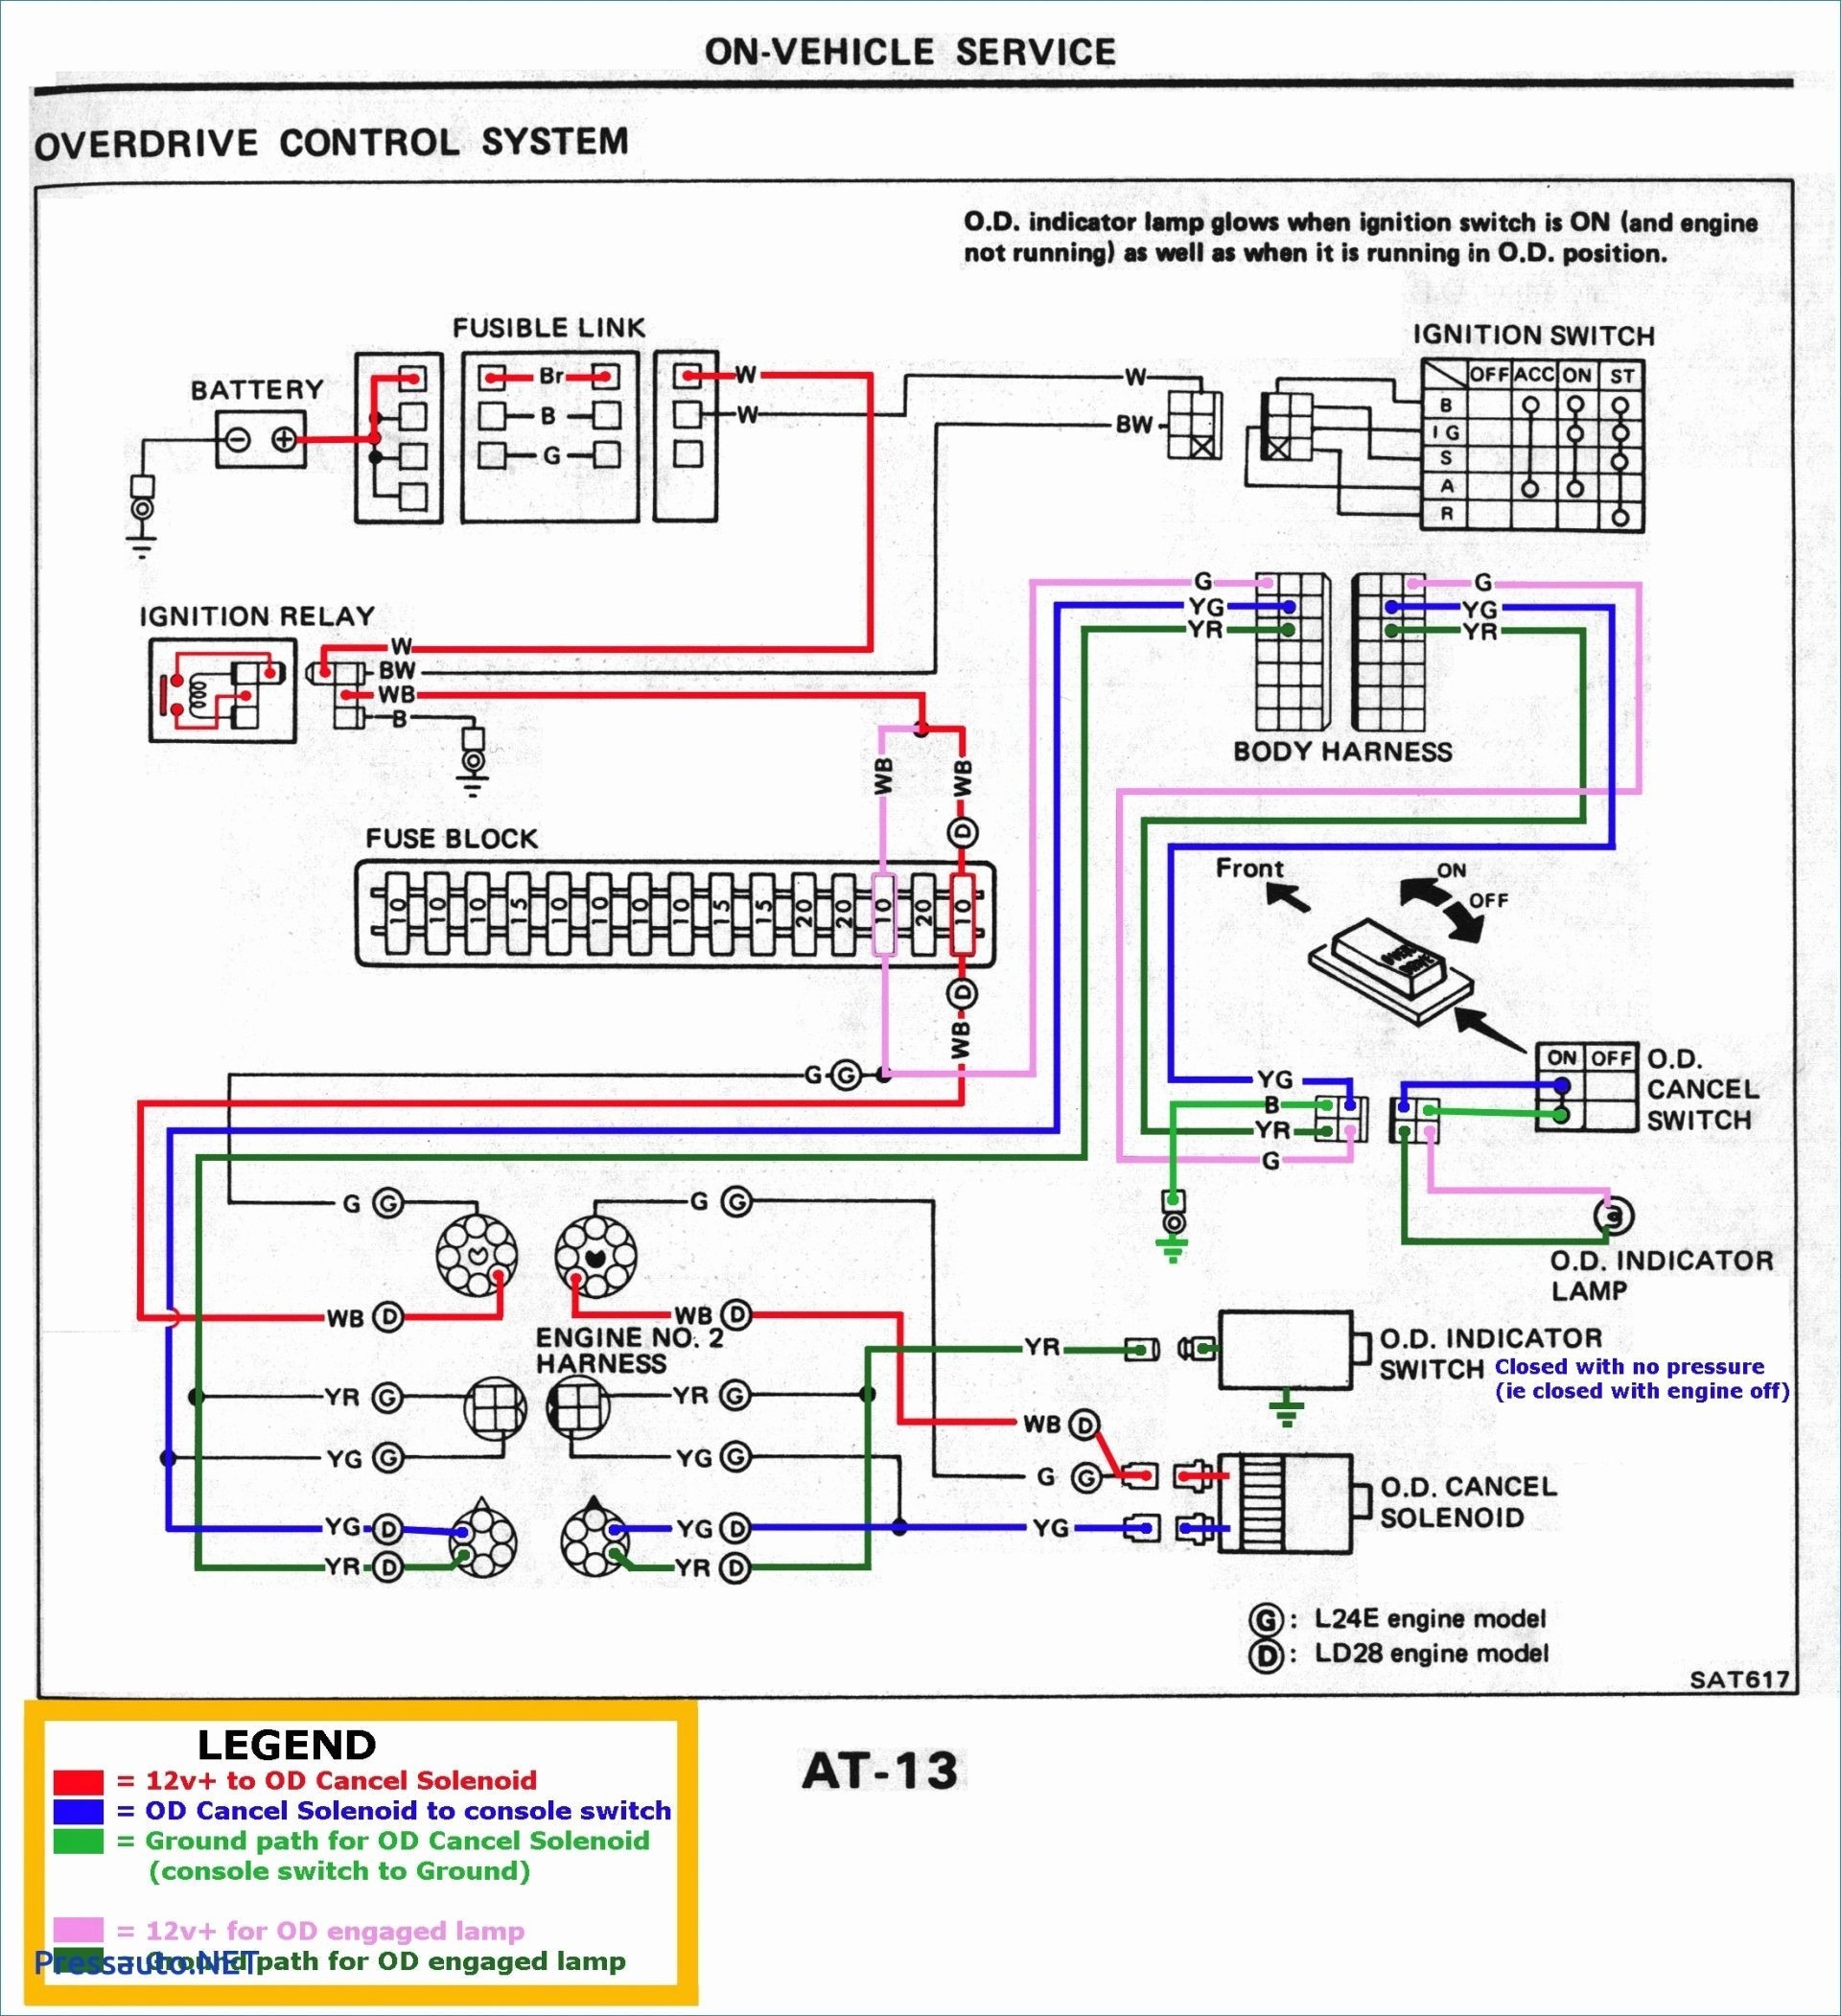 Wiring Diagram For Holden Alternator 2019 Simple Wiring Diagram Alternator Chevy